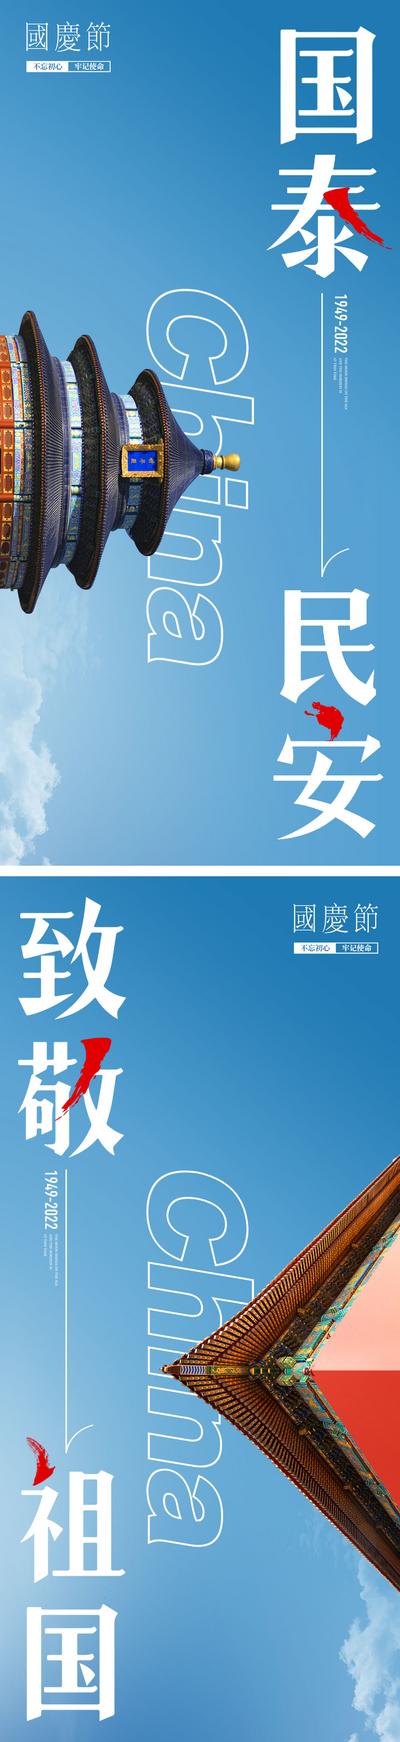 【南门网】海报 公历节日 国庆节 天坛 故宫 屋檐 蓝色 天空 大气